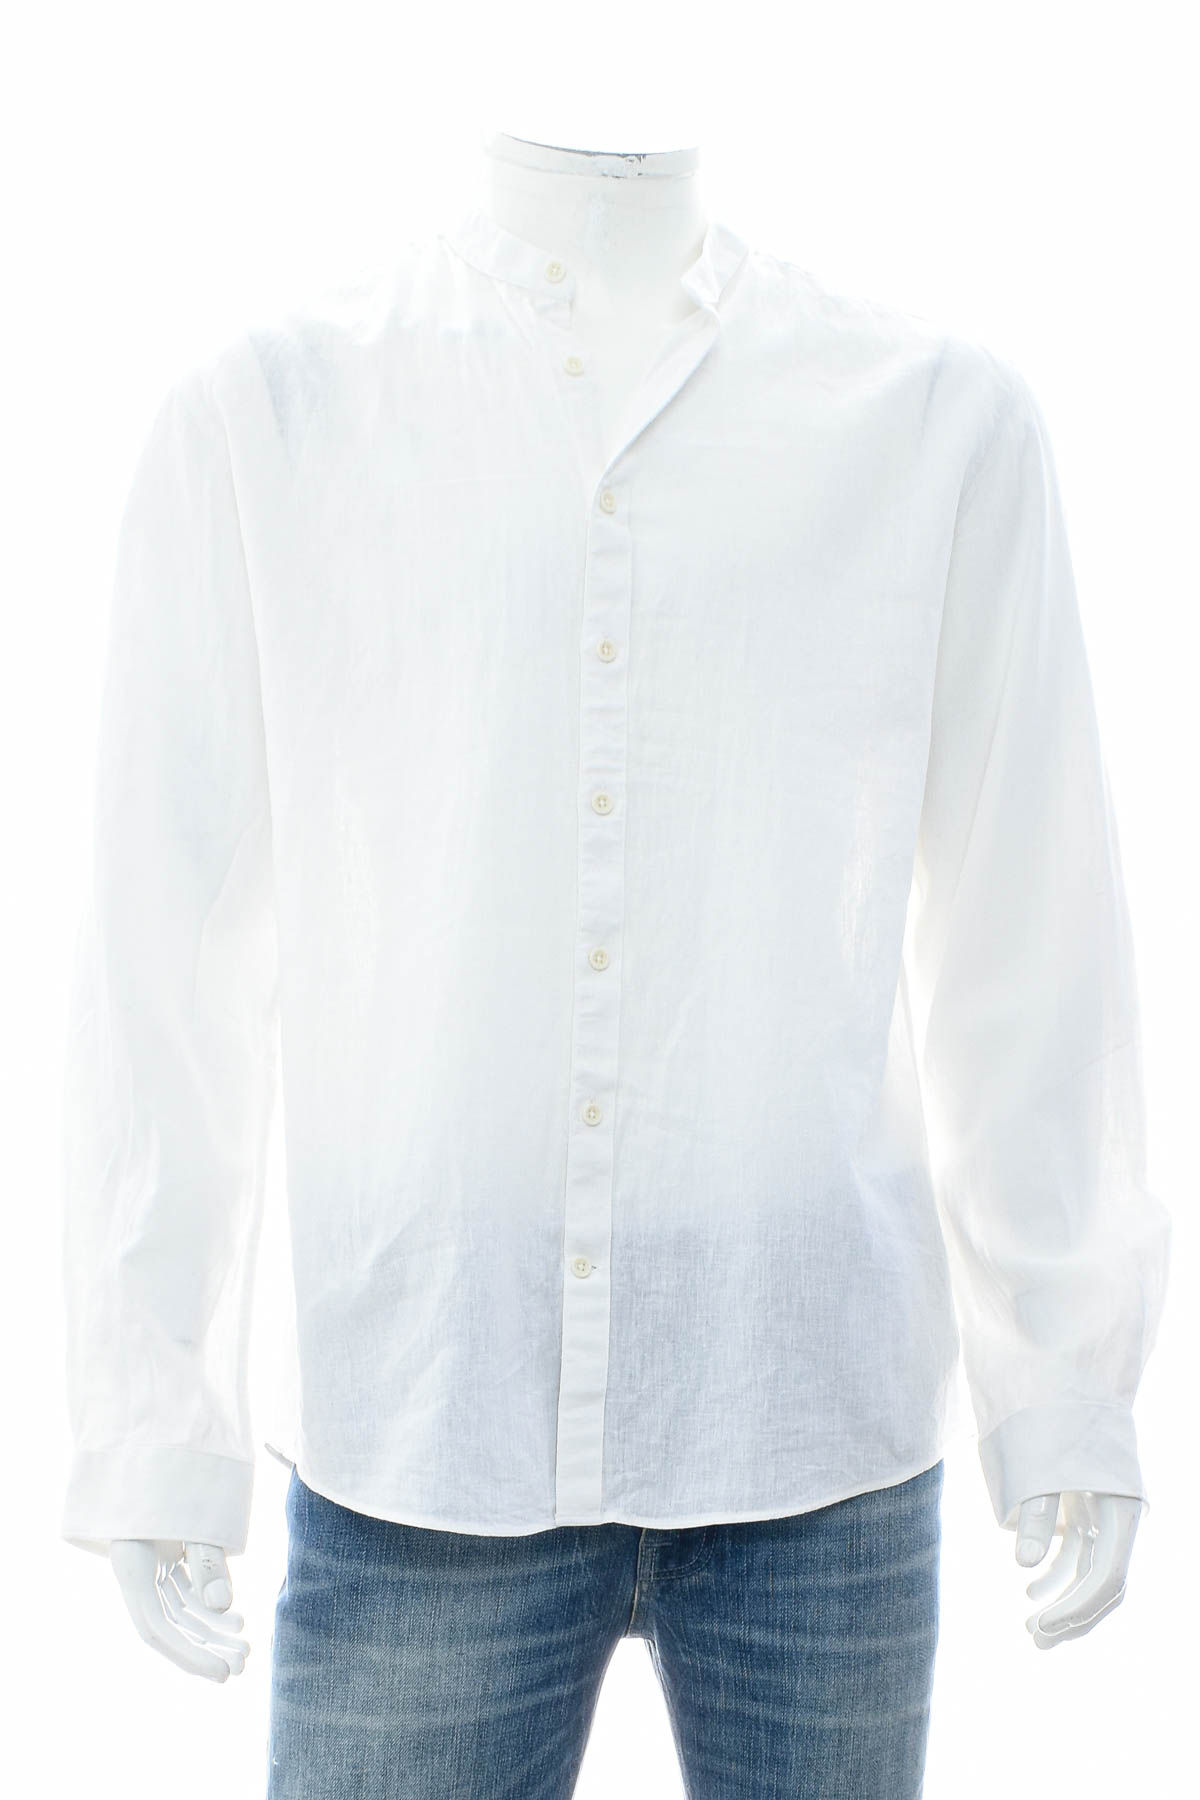 Ανδρικό πουκάμισο - LINDBERGH - 0